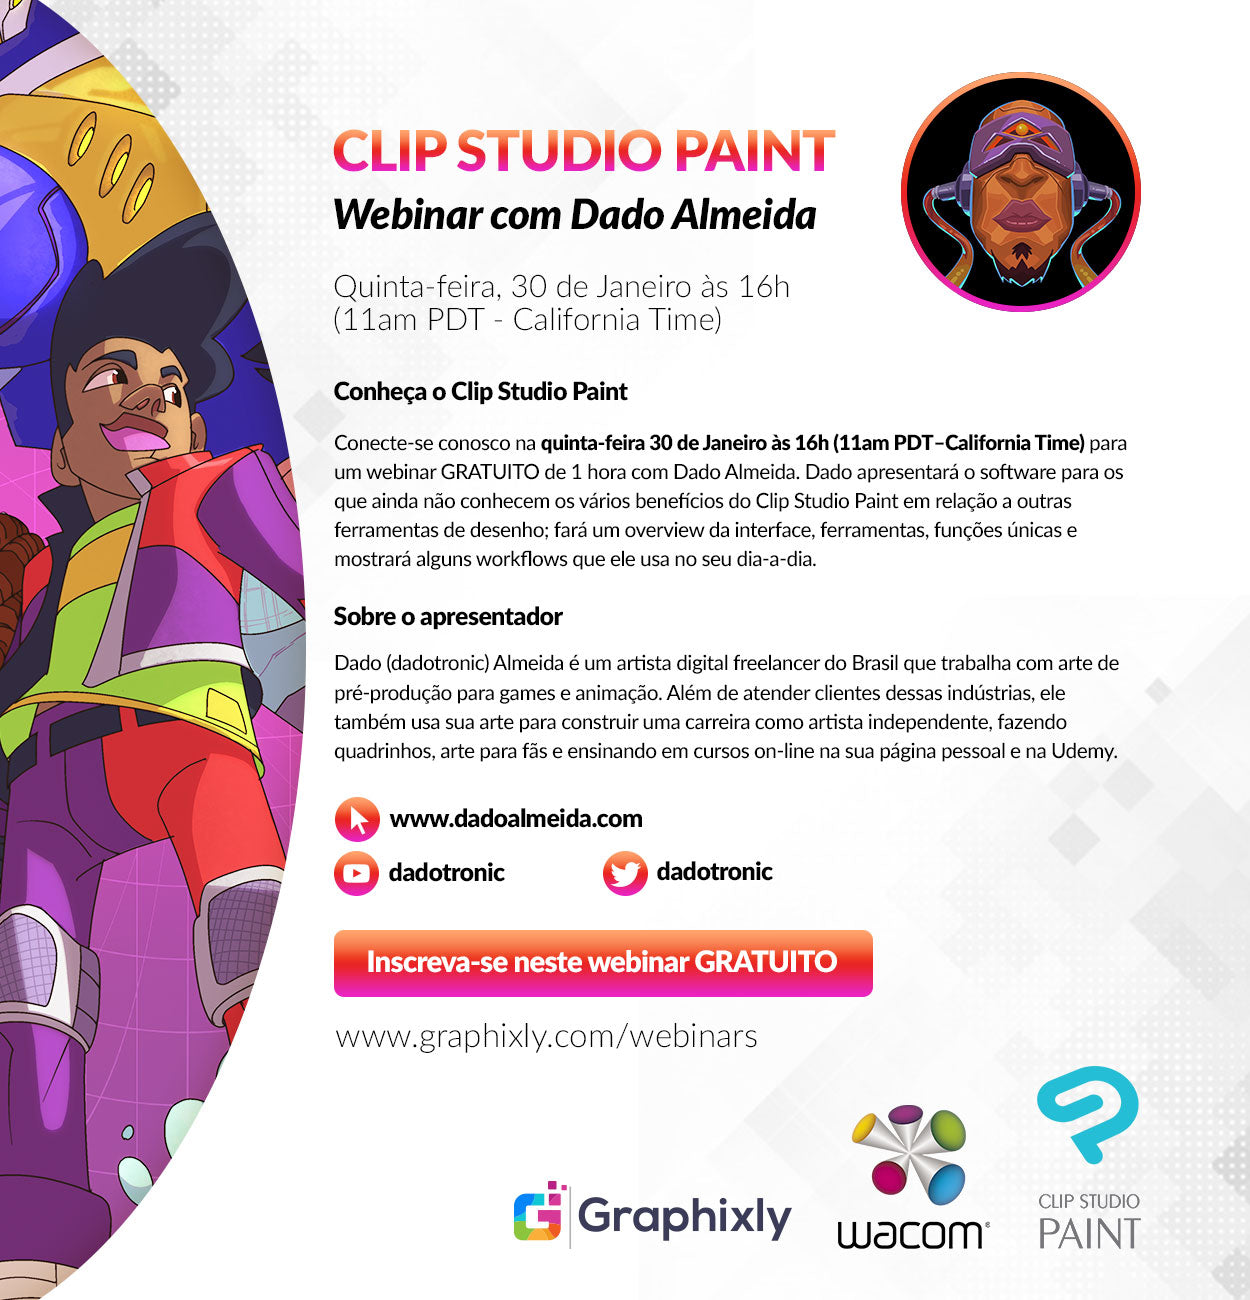 Webinar (Portuguese) - Conheça o Clip Studio Paint